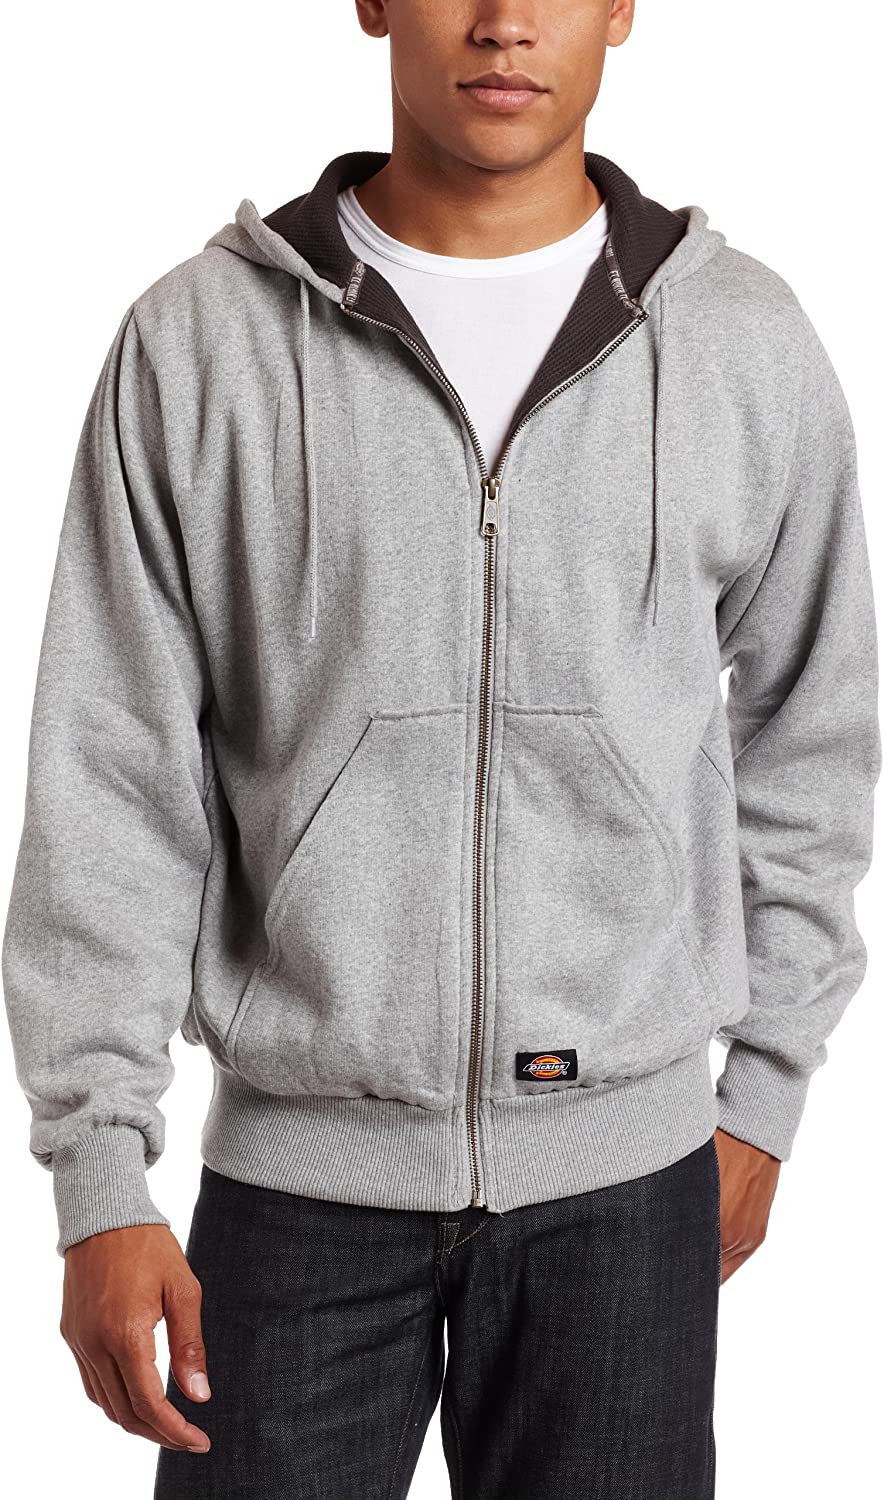 Thermal Lined Hood Fleece Jacket 